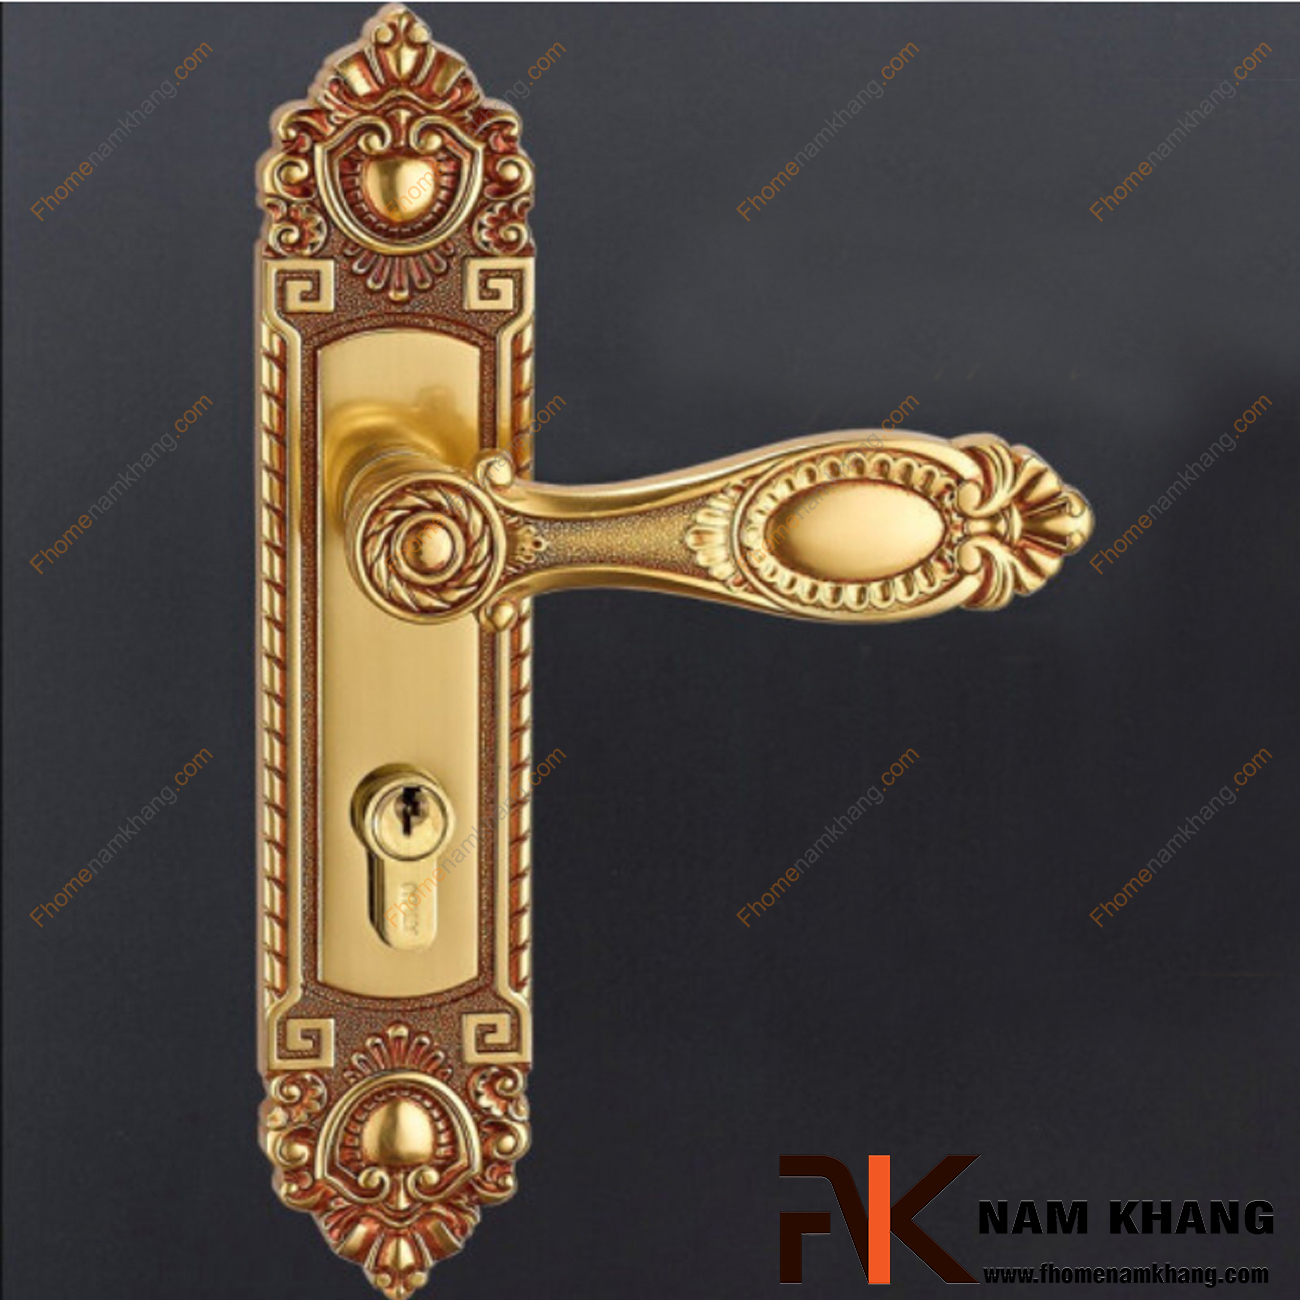 Khóa cửa thông phòng cổ điển bằng đồng cao cấp NK180M-RC có thiết kế tinh tế trên nền chất liệu đồng thau cổ điển.